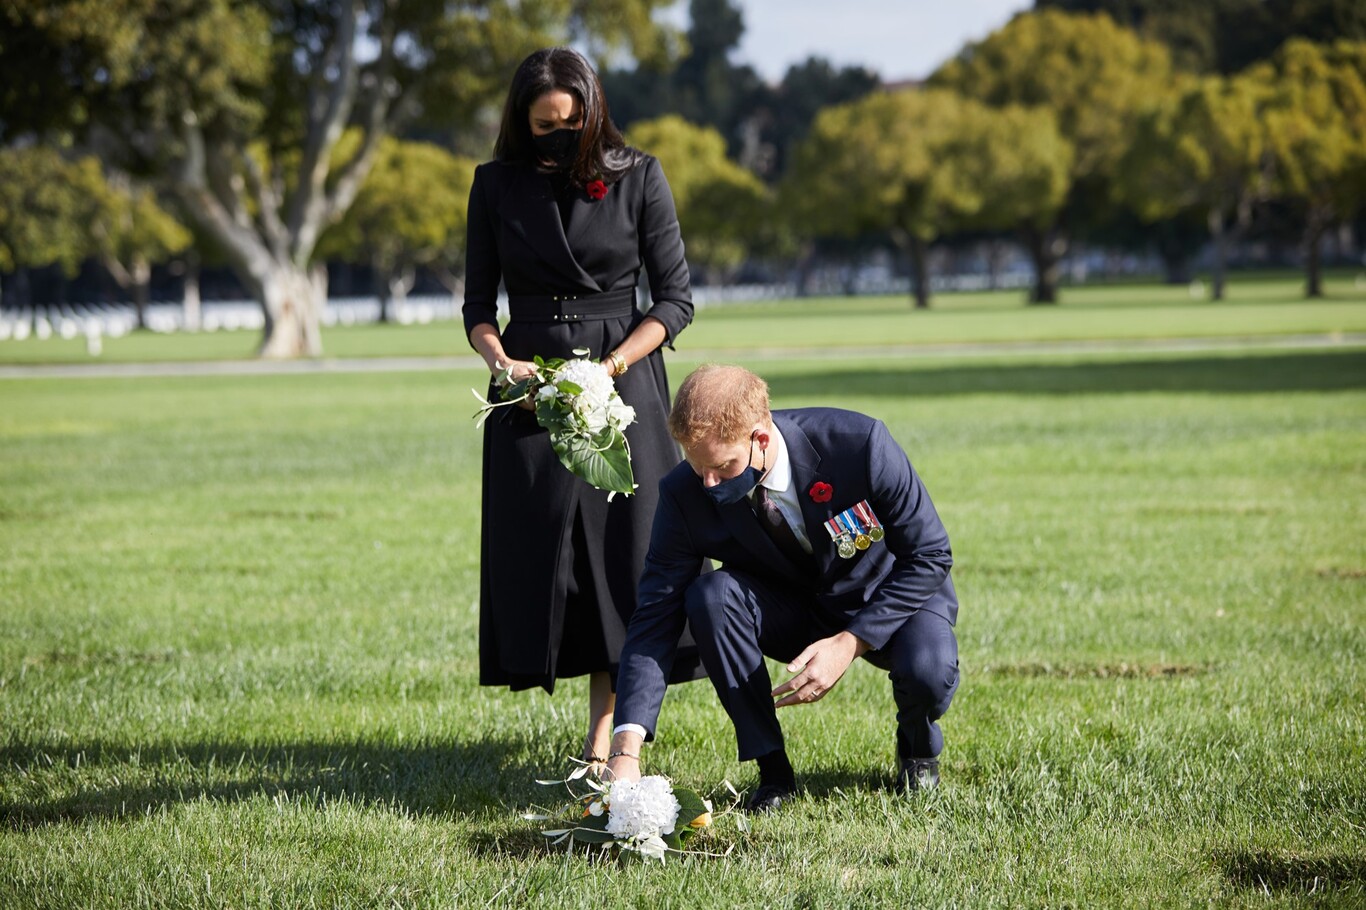 Meghan Markle y el Príncipe Harry celebran el Remembrance Sunday desde Los Ángeles